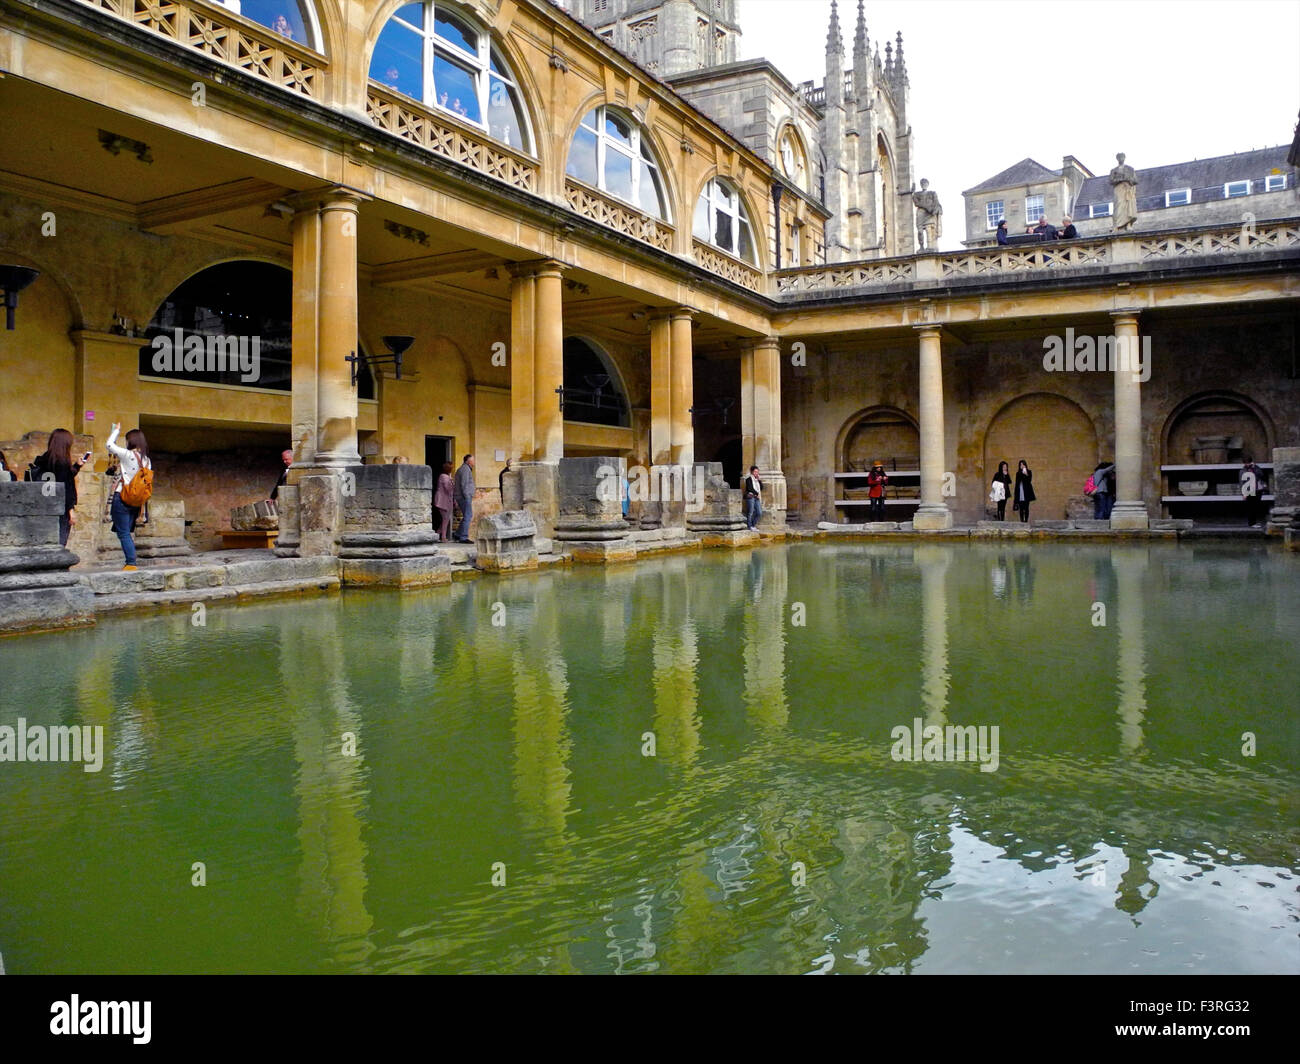 La città georgiana di Bath attira i numeri dei visitatori stranieri o turisti che prendere le fotografie senza fine per registrare il loro viaggio. Queste sono le Terme Romane a Bath. Foto Stock